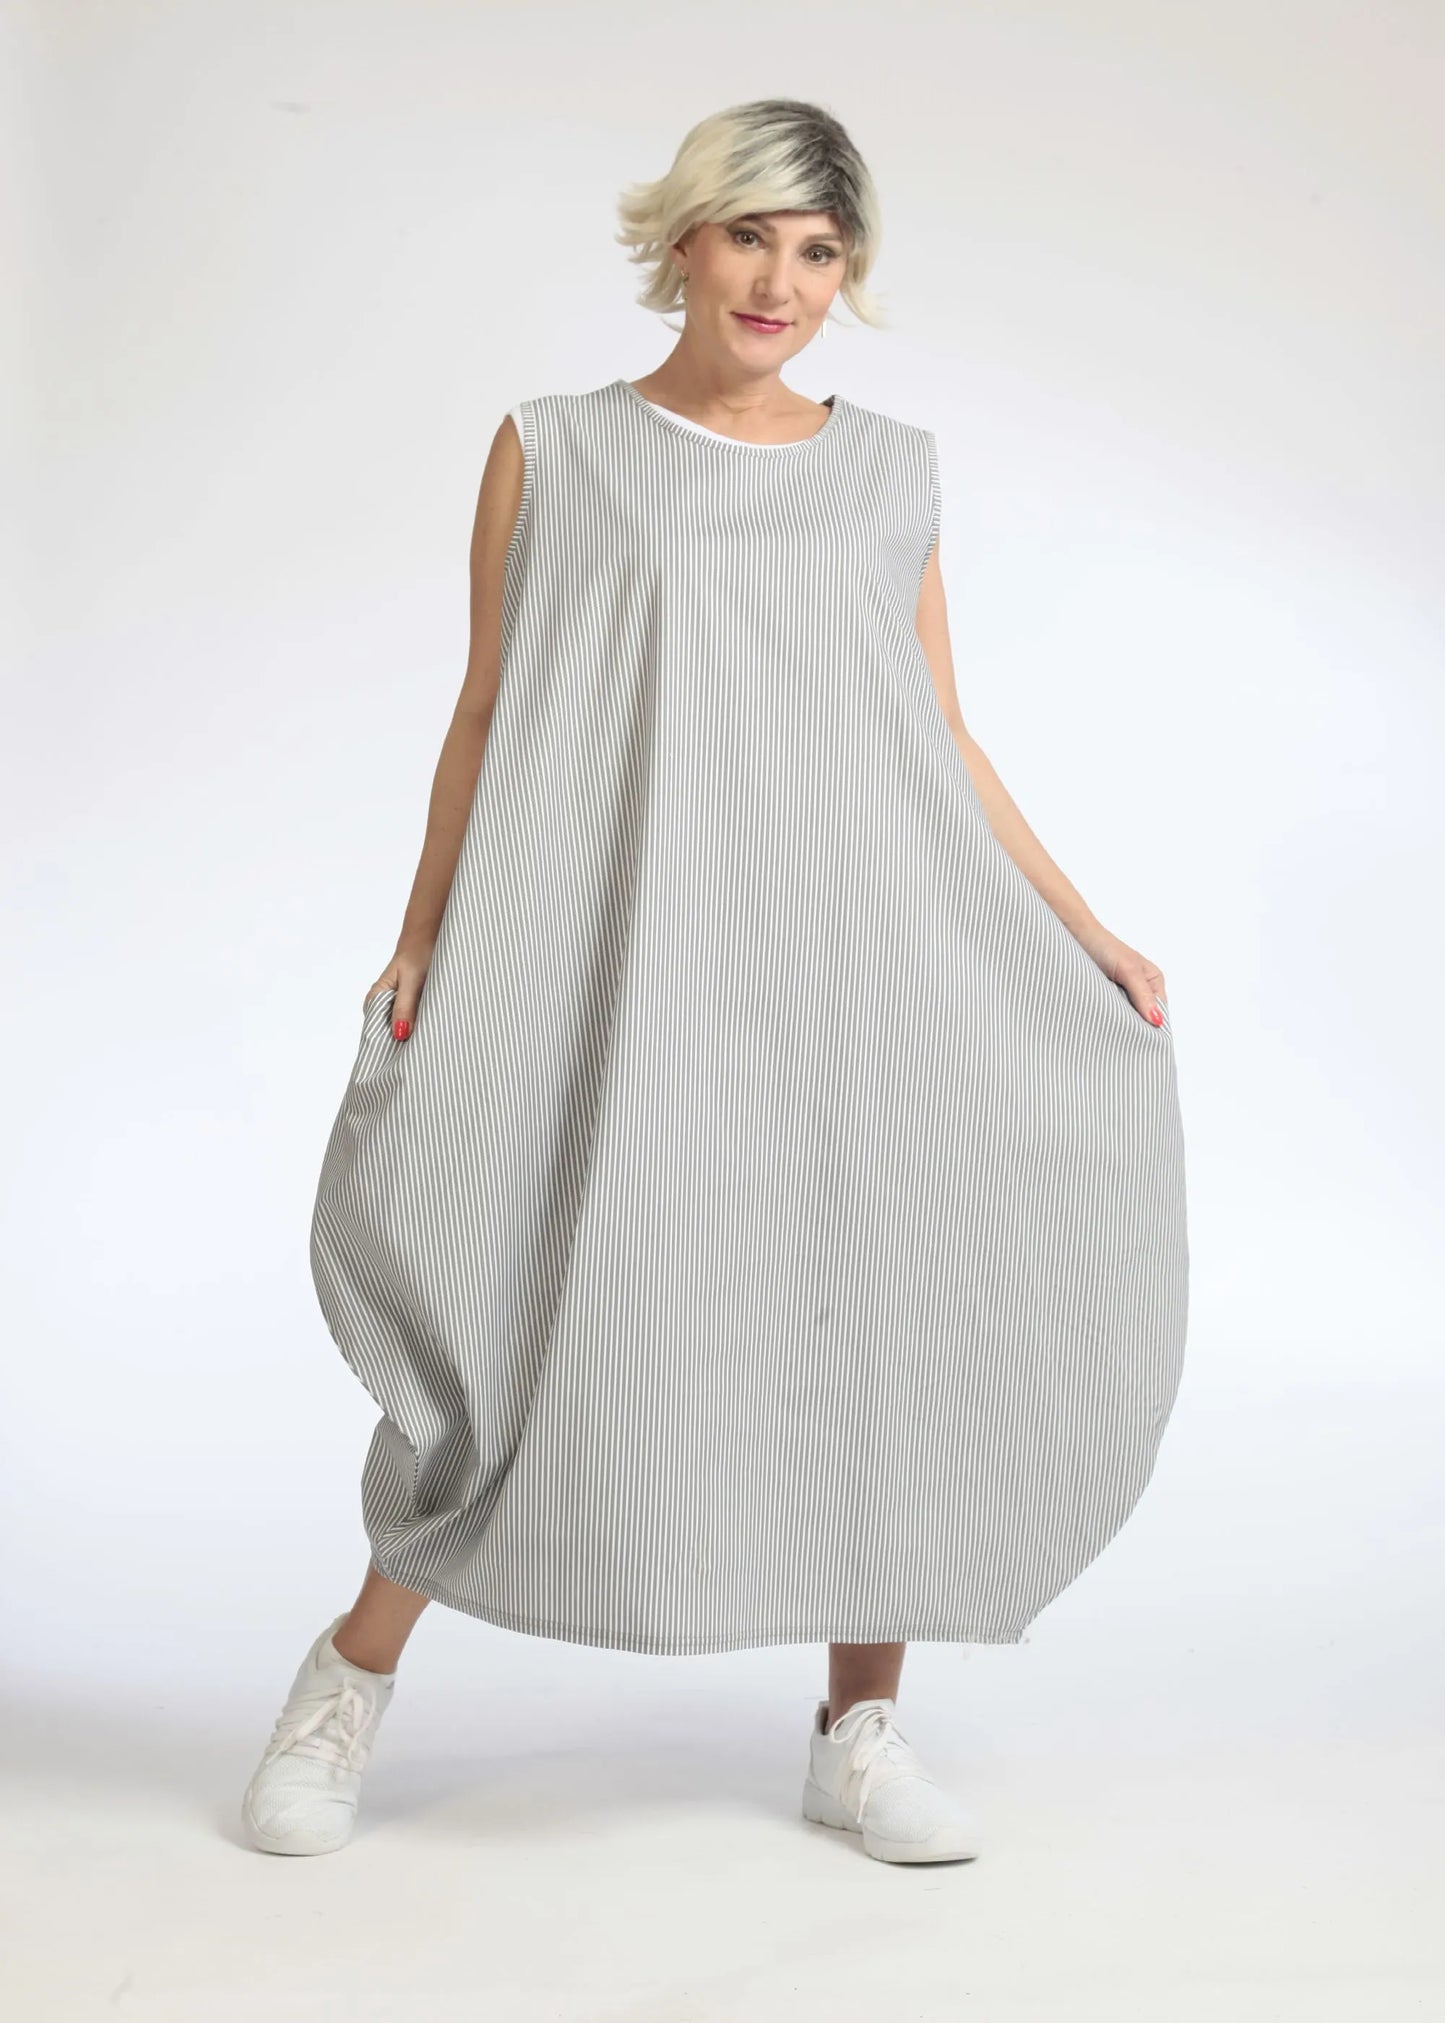 Sommer Kleid in Ballon Form aus glatter Popeline Qualität, Verena in Grau-Weiß